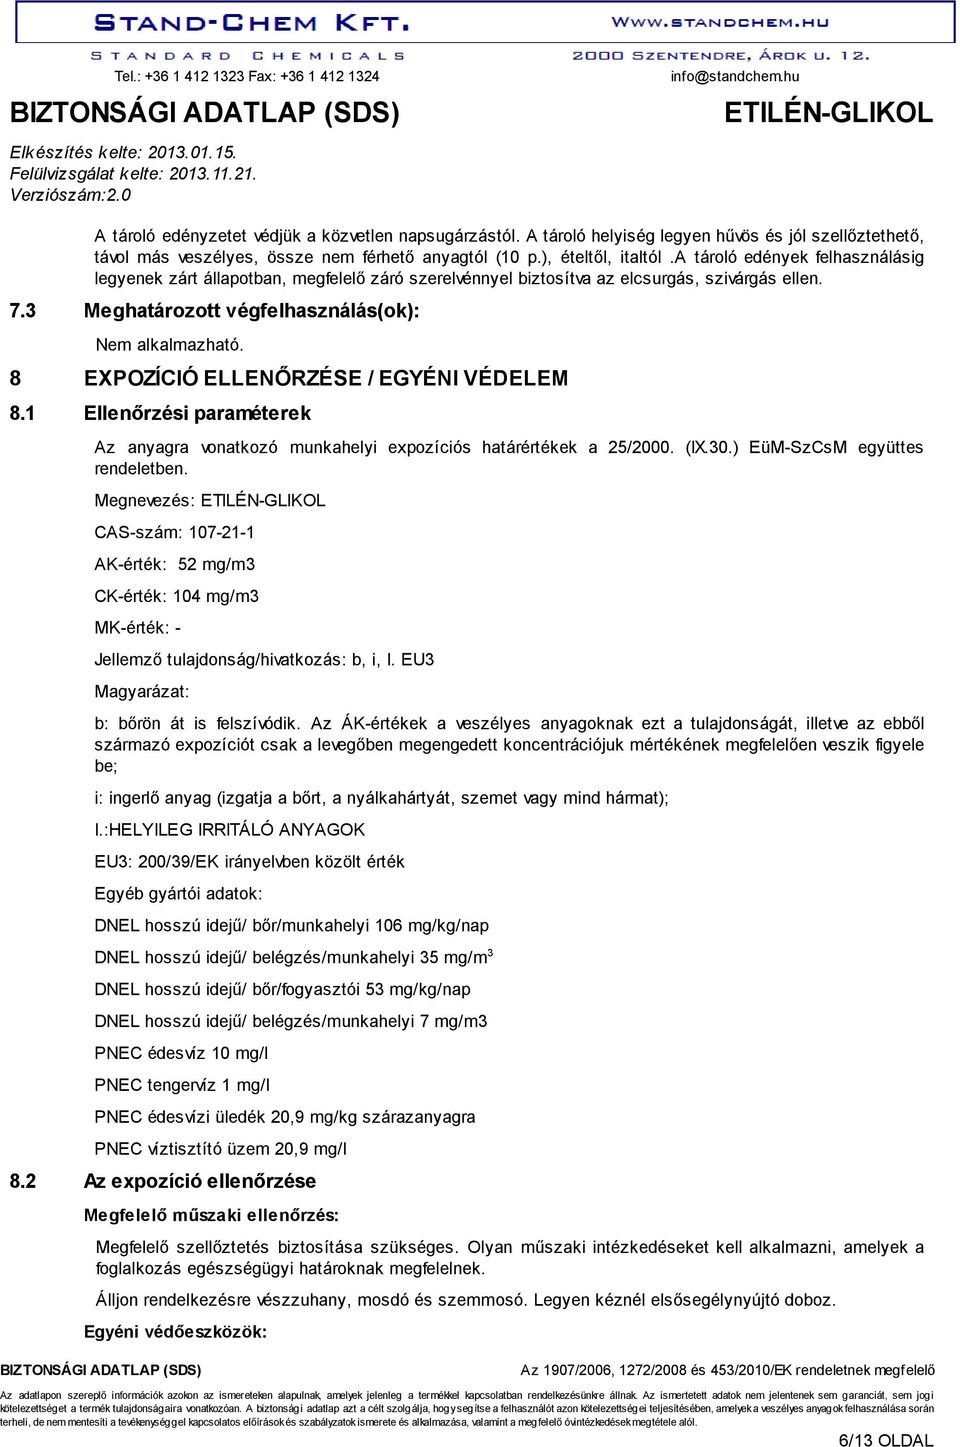 8 EXPOZÍCIÓ ELLENŐRZÉSE / EGYÉNI VÉDELEM 8.1 Ellenőrzési paraméterek Az anyagra vonatkozó munkahelyi expozíciós határértékek a 25/2000. (IX.30.) EüM-SzCsM együttes rendeletben.